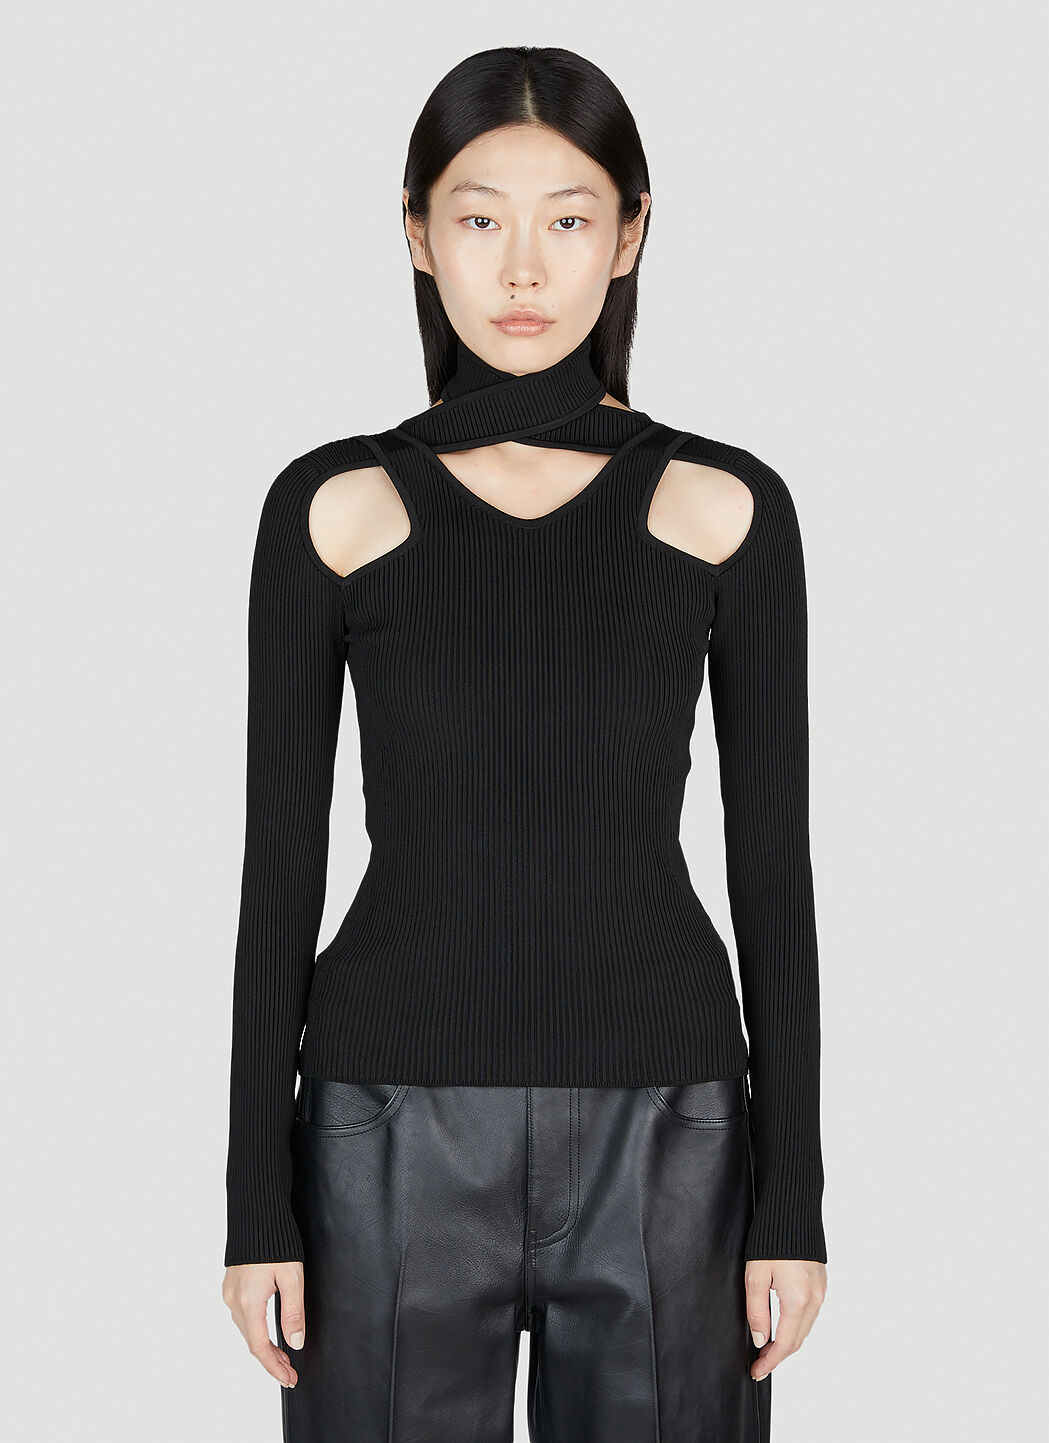 Coperni Cut-Out Knit Sweater Black cpn0251010